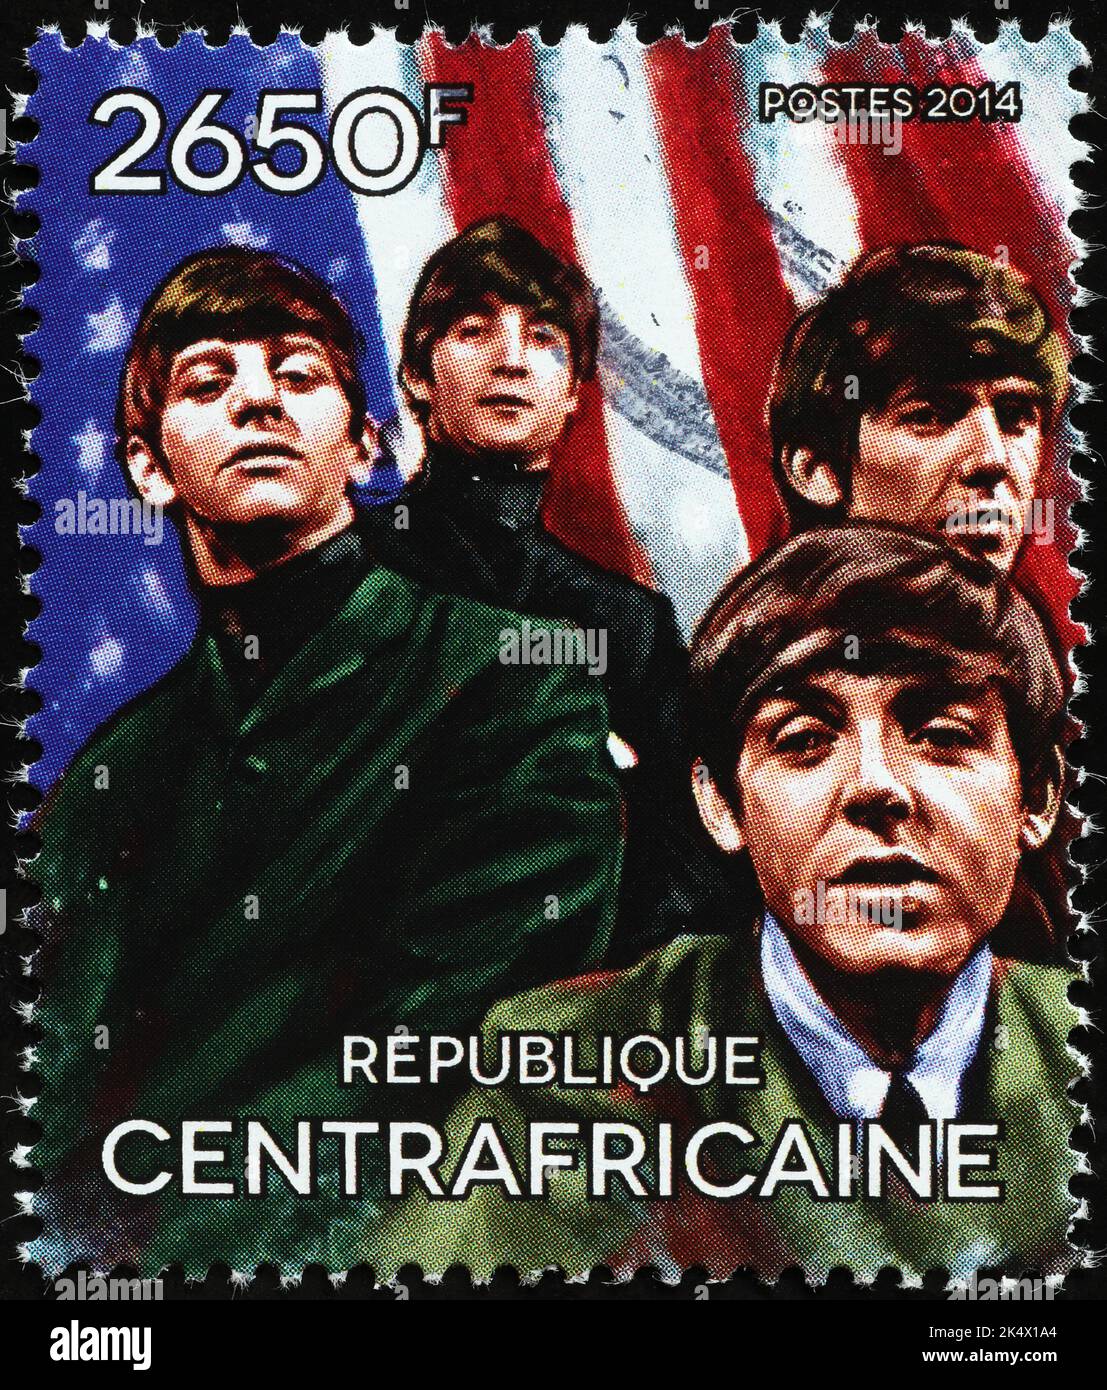 Gira de los Beatles en 1964 por Norteamérica con sello postal Foto de stock